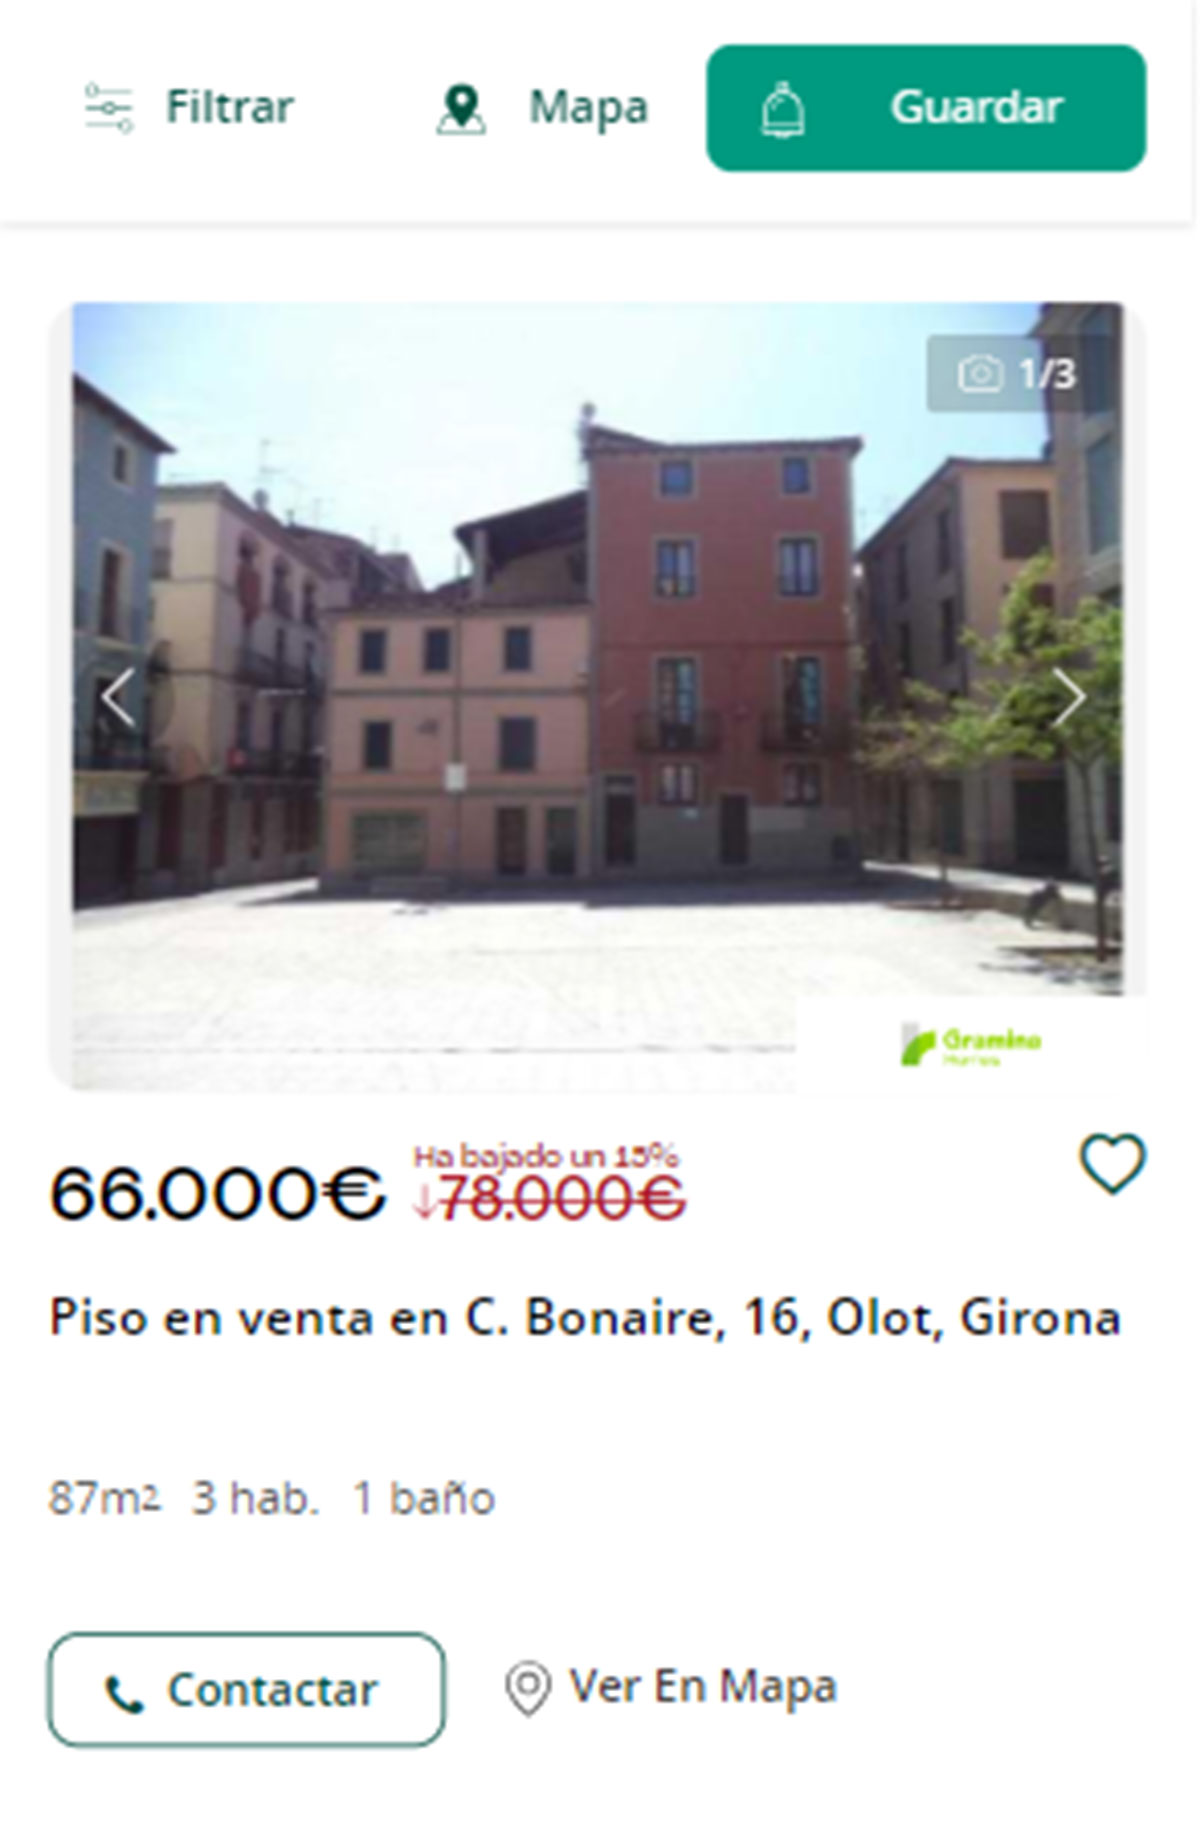 Piso en Girona por 66.000 euros